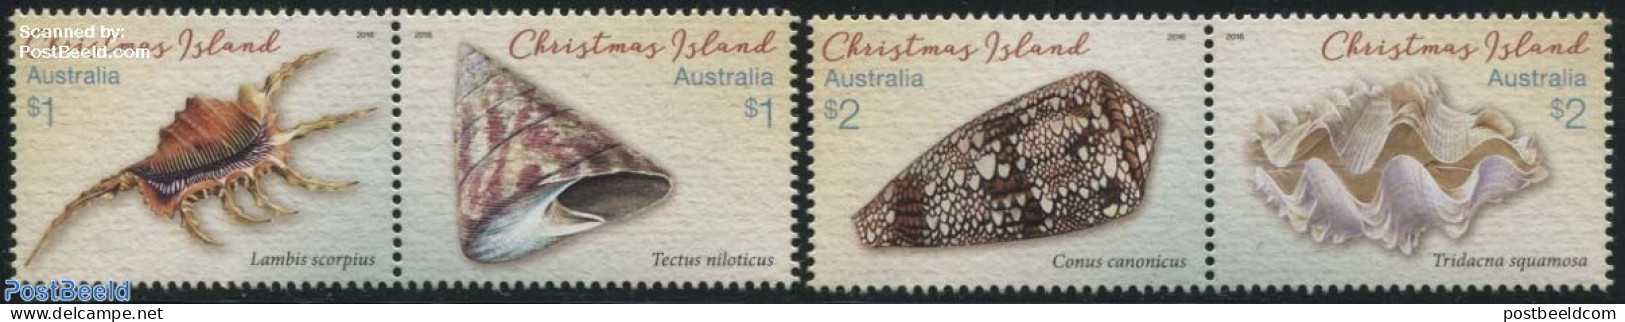 Christmas Islands 2016 Shells 4v (2x[:]), Mint NH, Nature - Shells & Crustaceans - Maritiem Leven